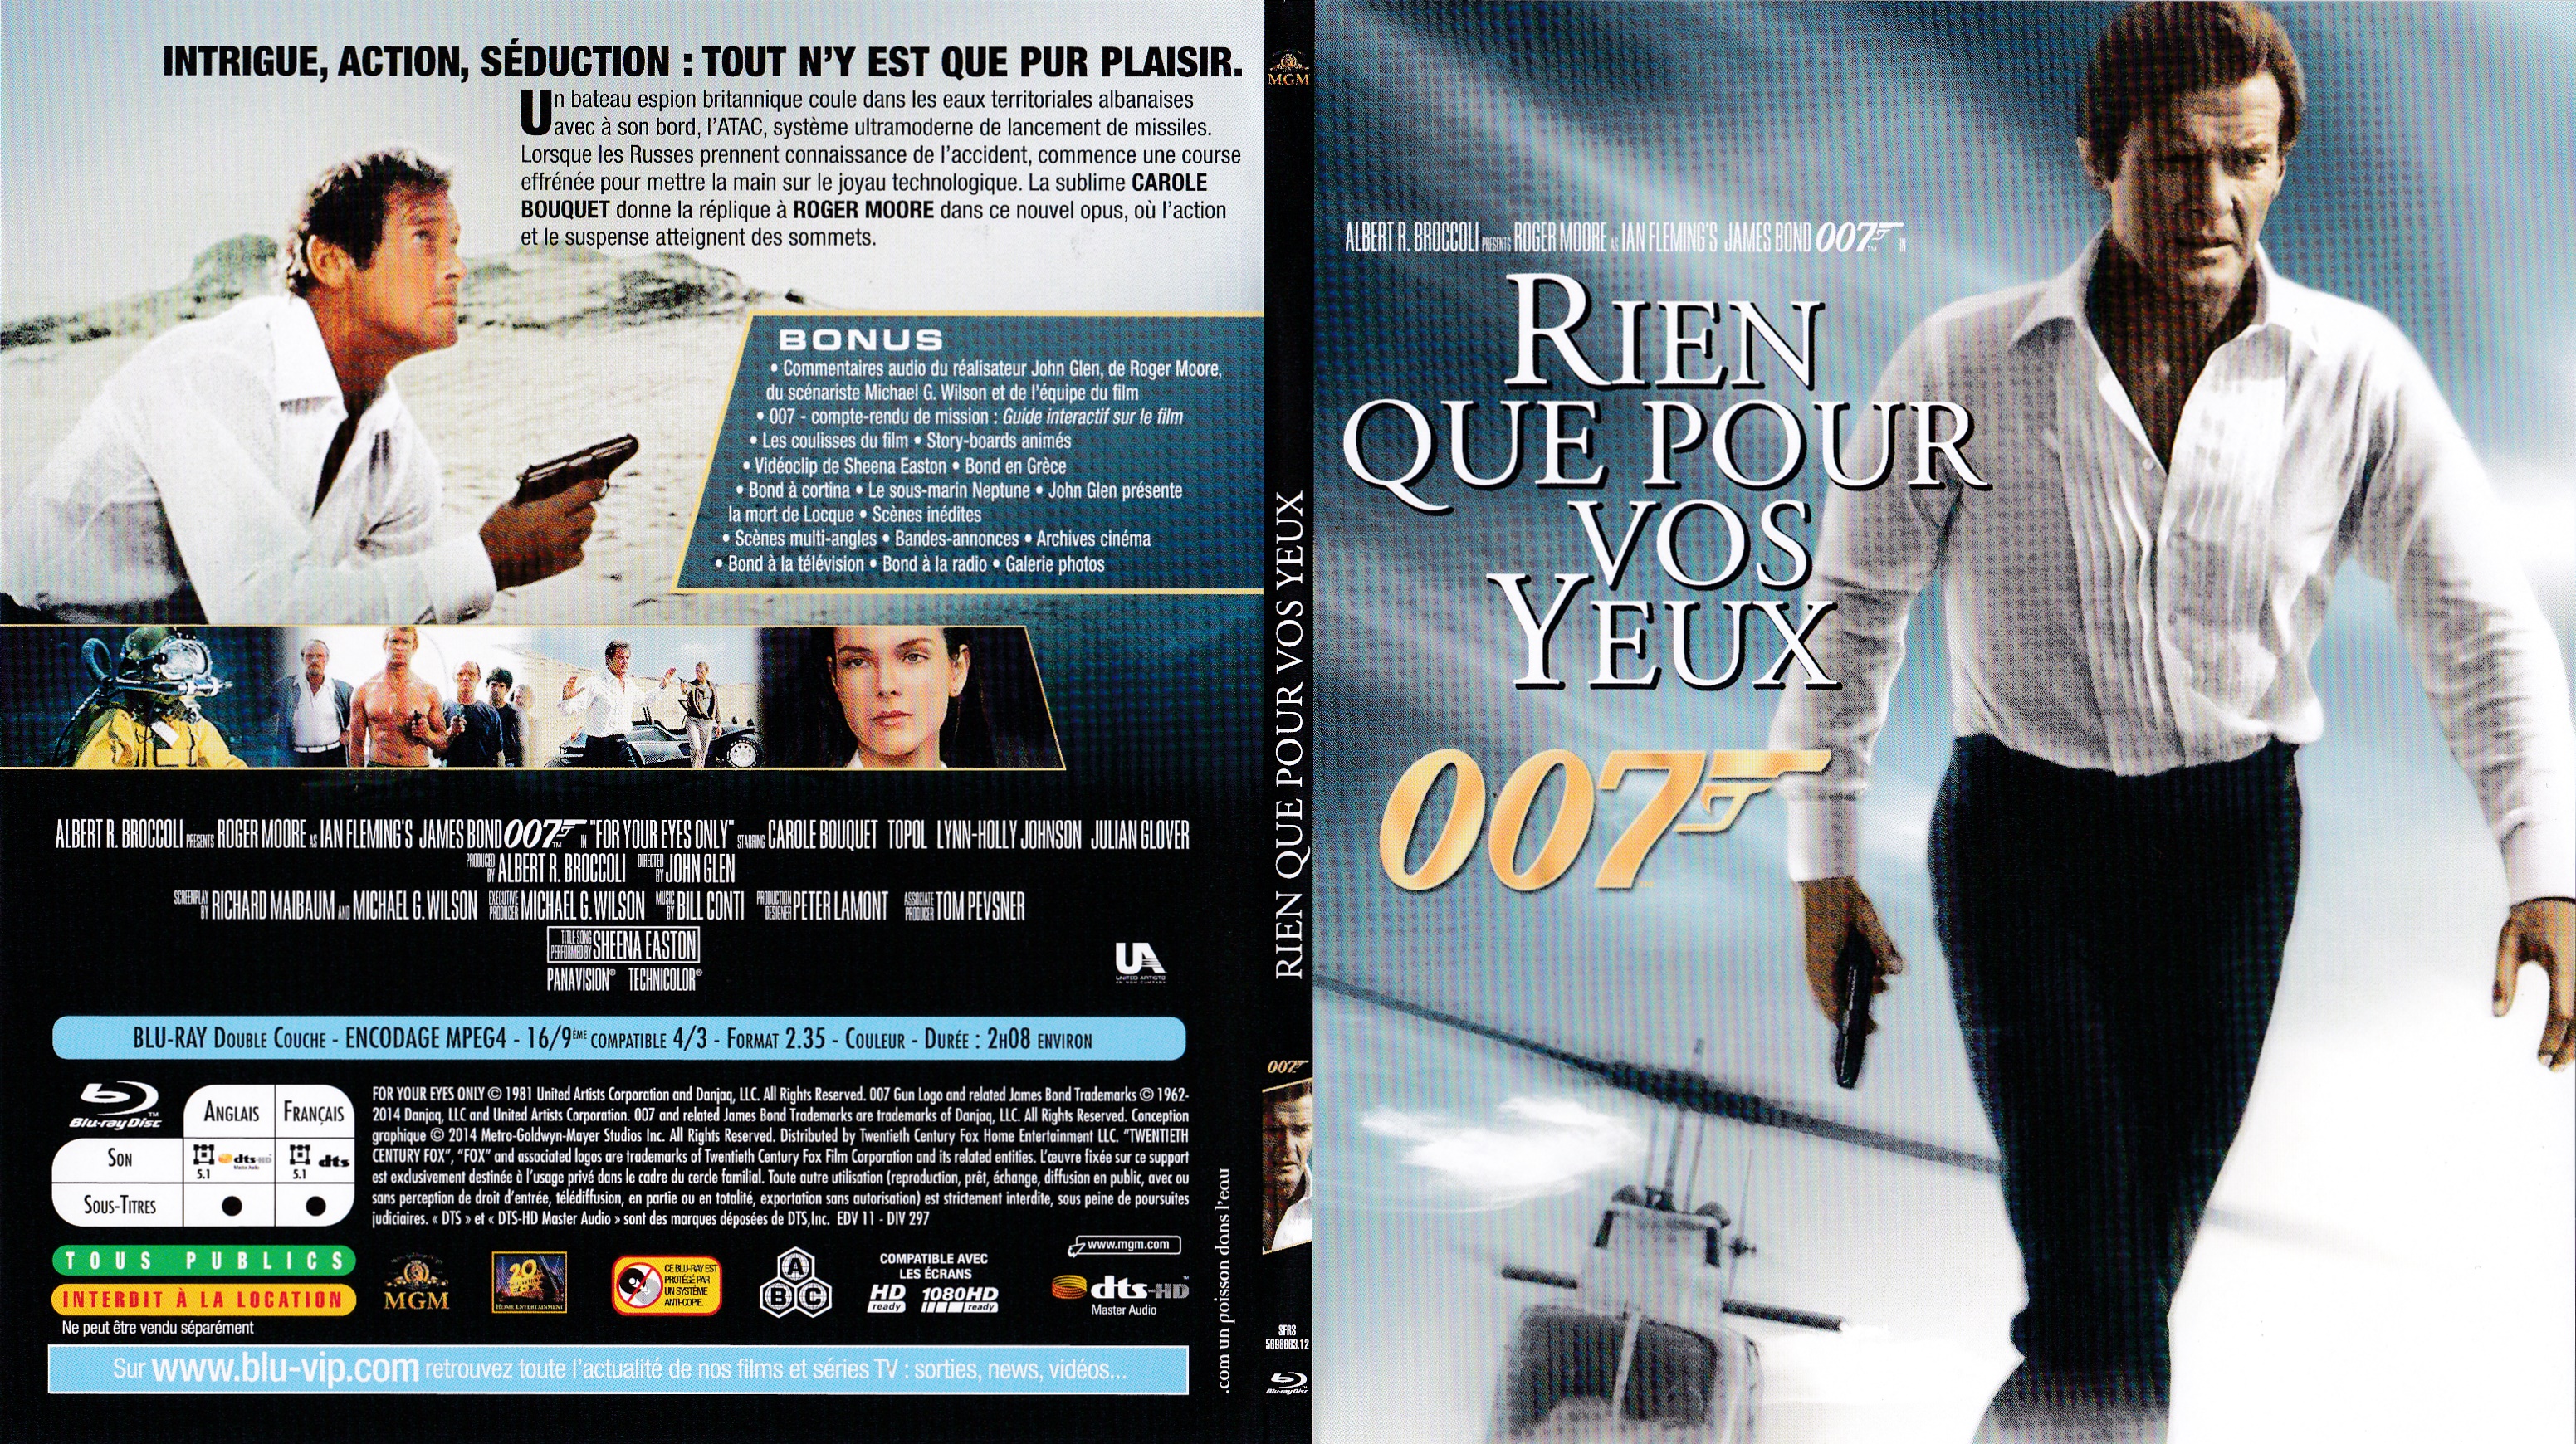 Jaquette DVD James Bond 007 Rien que pour vos yeux (BLU-RAY) v2